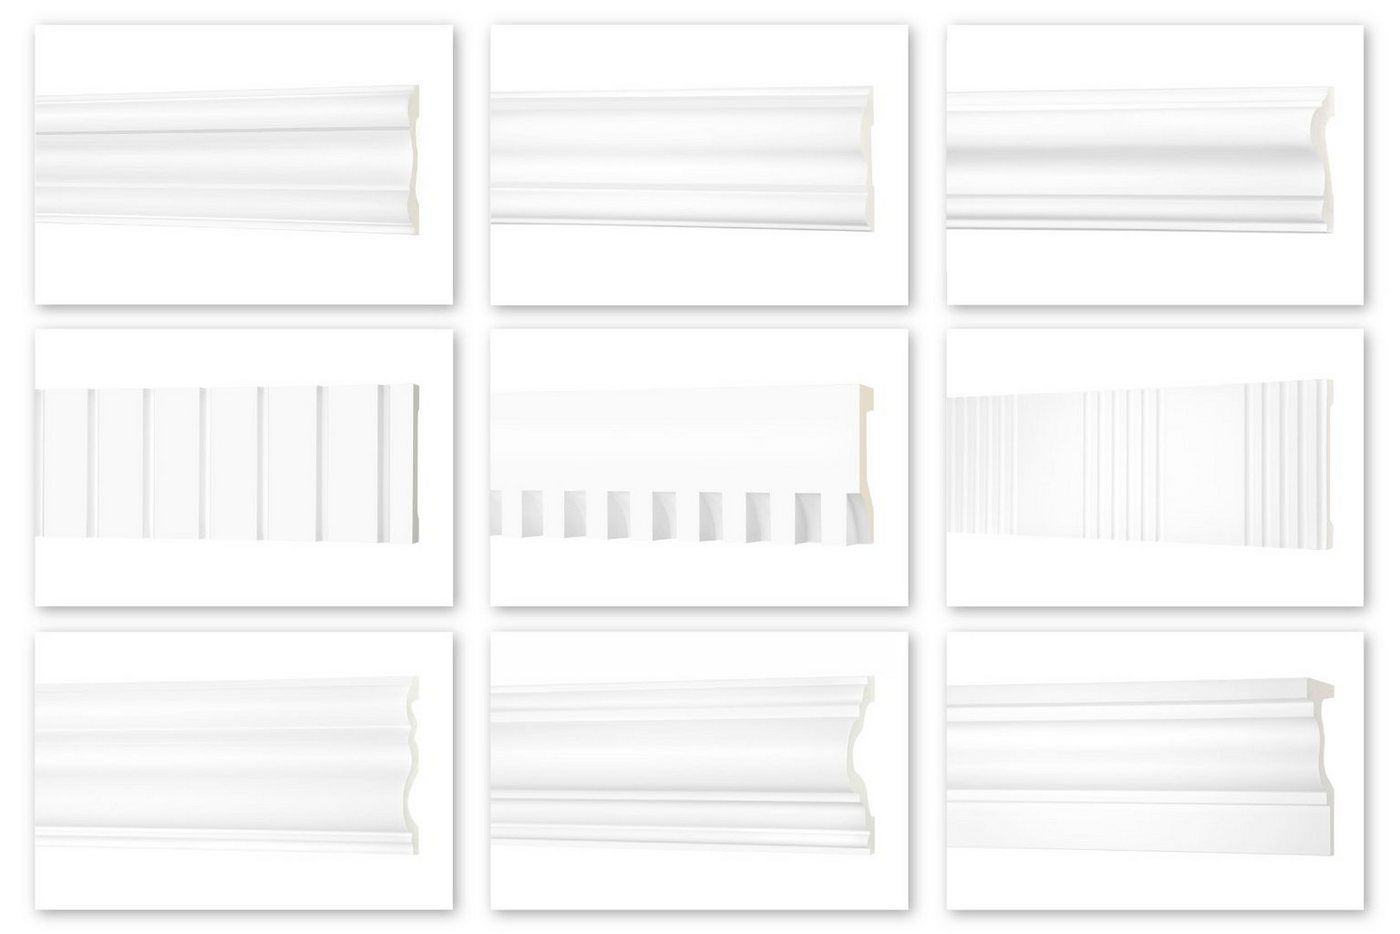 Hexim Perfect Stuckleiste AD 366, Flachleiste aus PU Serie 2 - Stuckleiste glatt, weißes Zierprofil, hart & stoßfest - Wandleiste vorgrundiert von Hexim Perfect